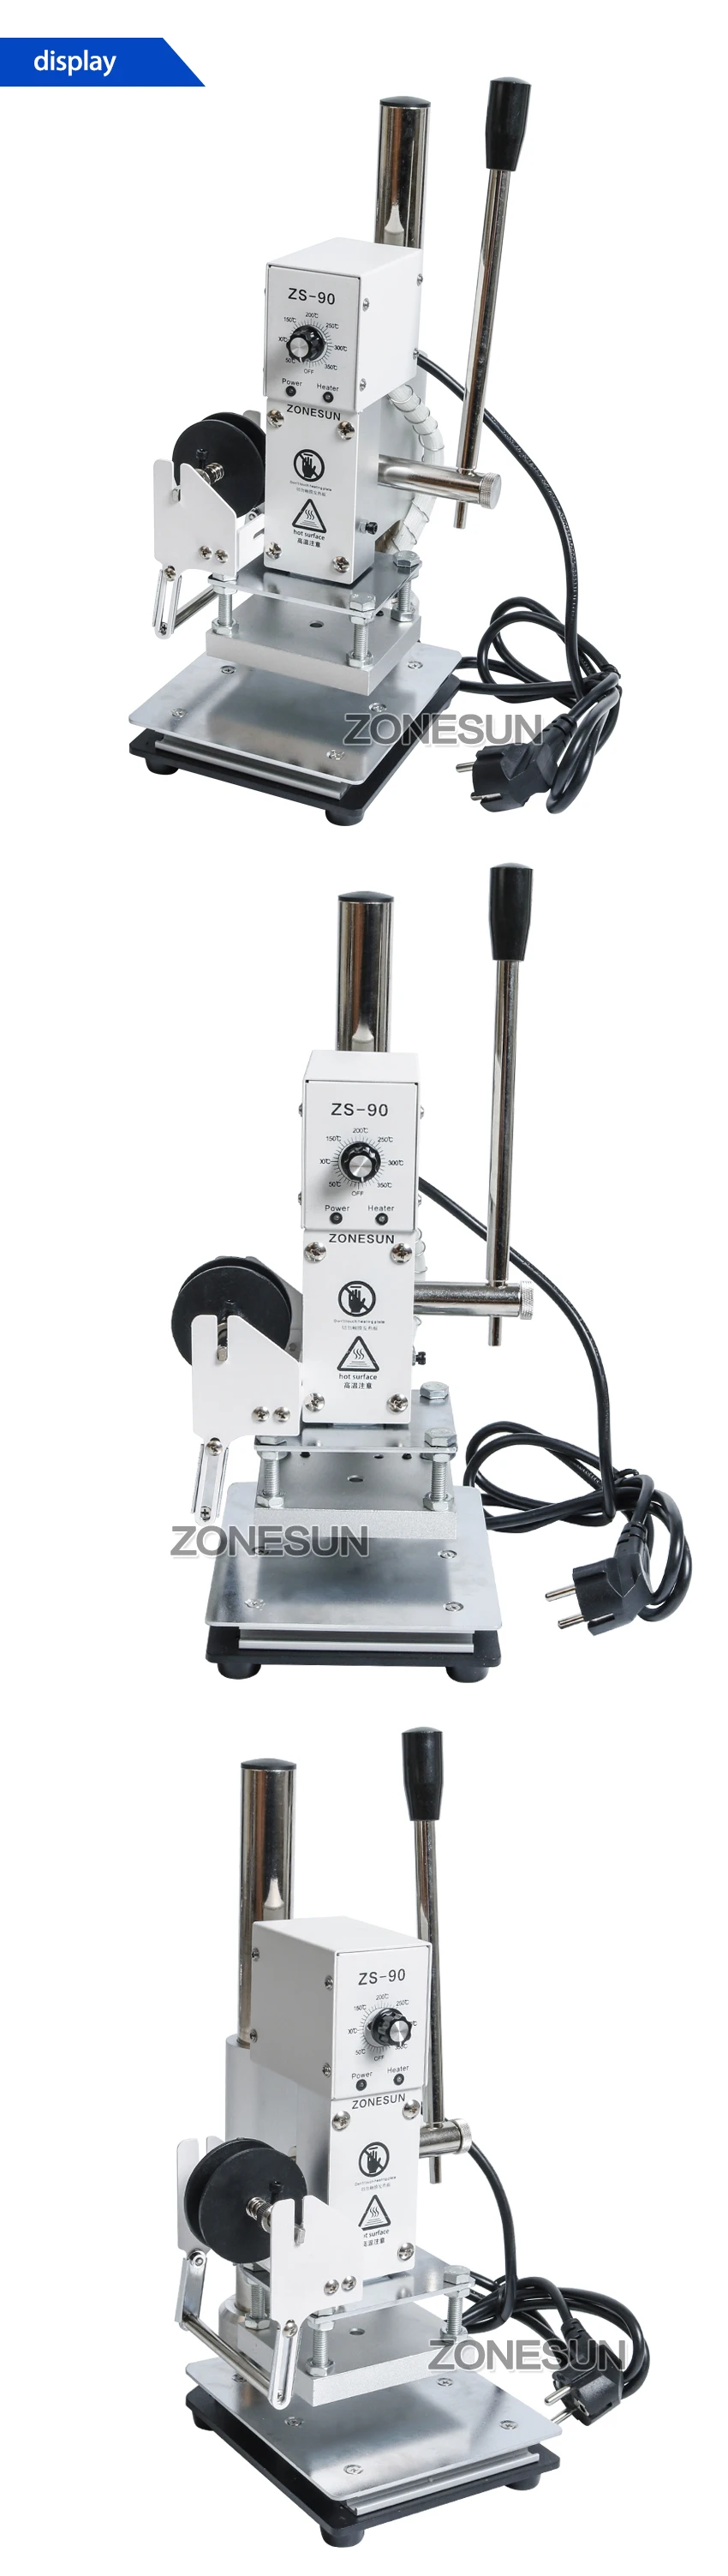 ZONESUN 1 шт. 110 В/220 В ручная маркировочная машина для тиснения горячей Фольги Кожа ПВХ принтер с контролем температуры